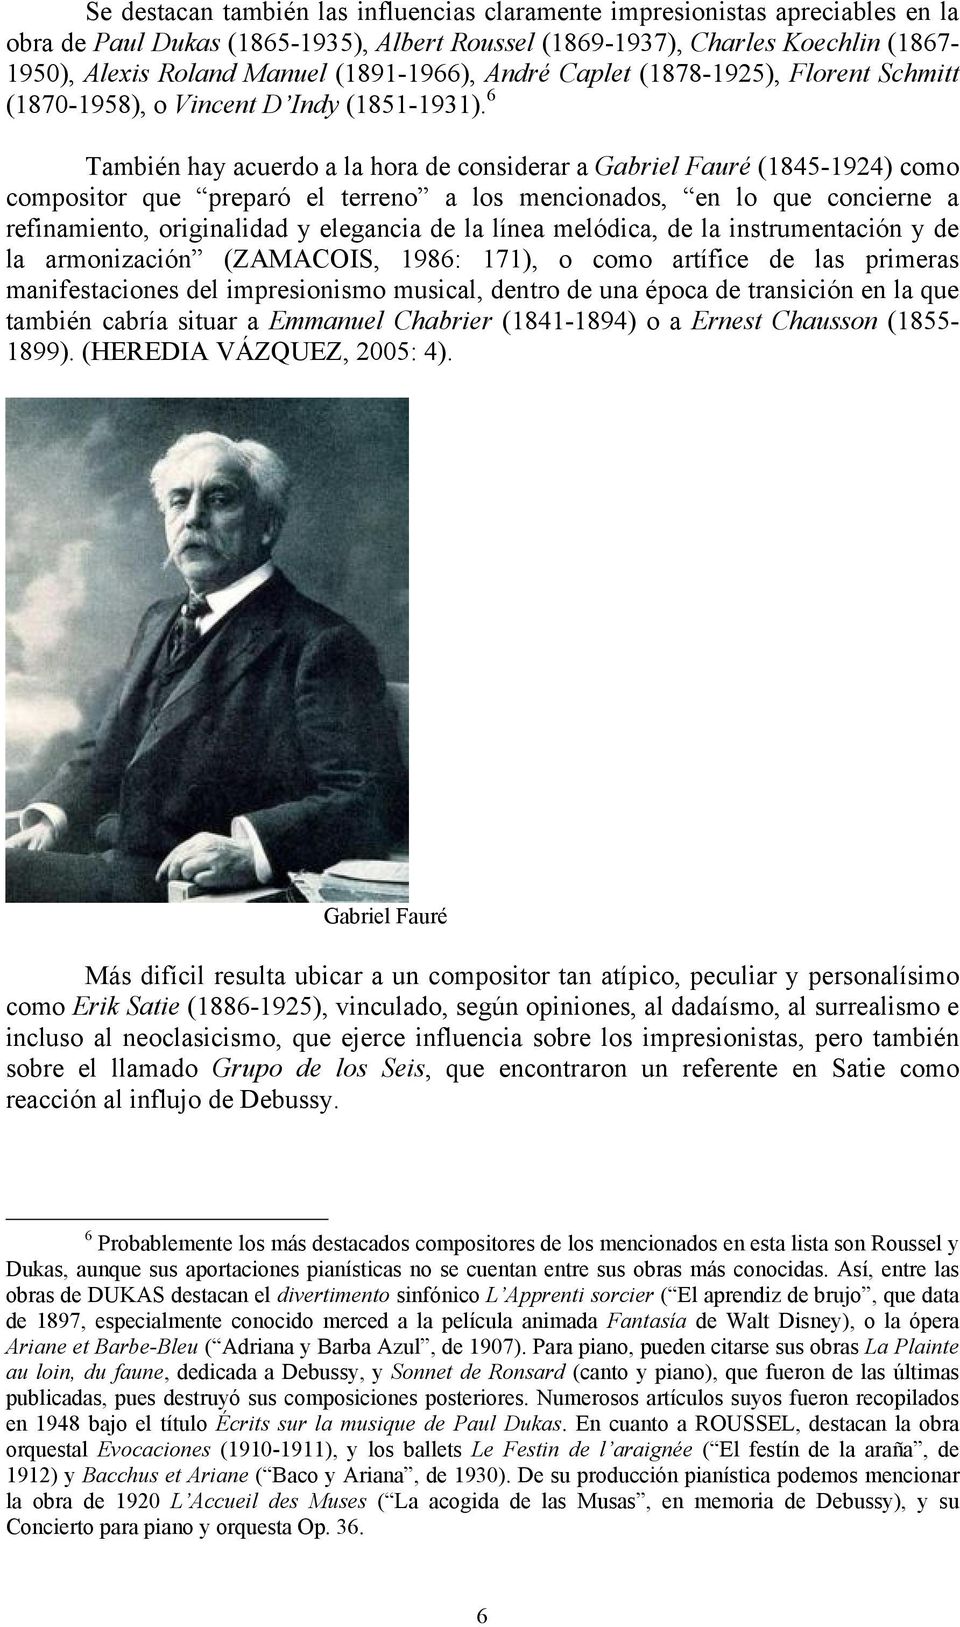 6 También hay acuerdo a la hora de considerar a Gabriel Fauré (1845-1924) como compositor que preparó el terreno a los mencionados, en lo que concierne a refinamiento, originalidad y elegancia de la